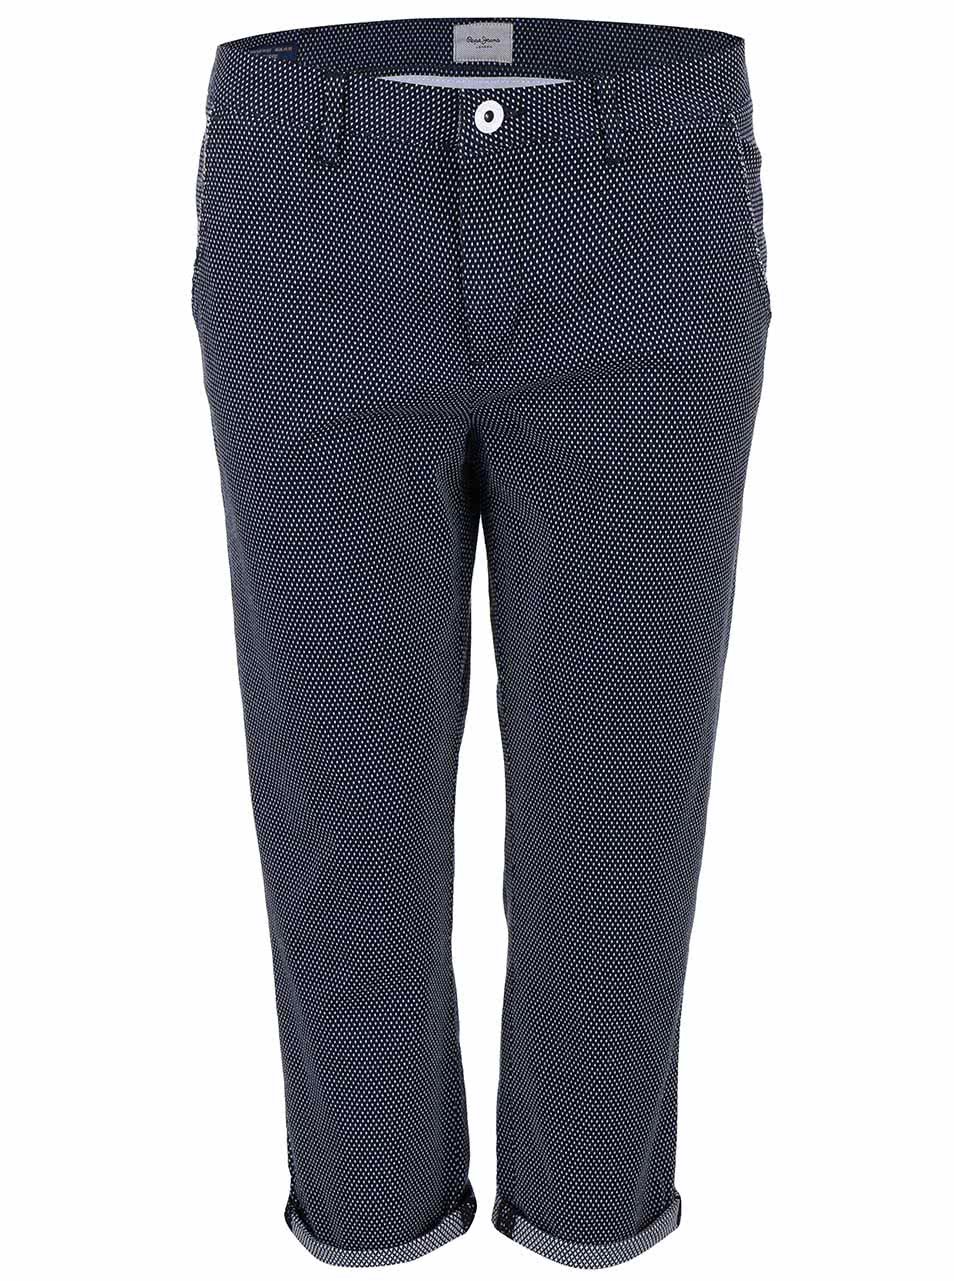 Tmavě modré kalhoty s puntíky Pepe Jeans Nina